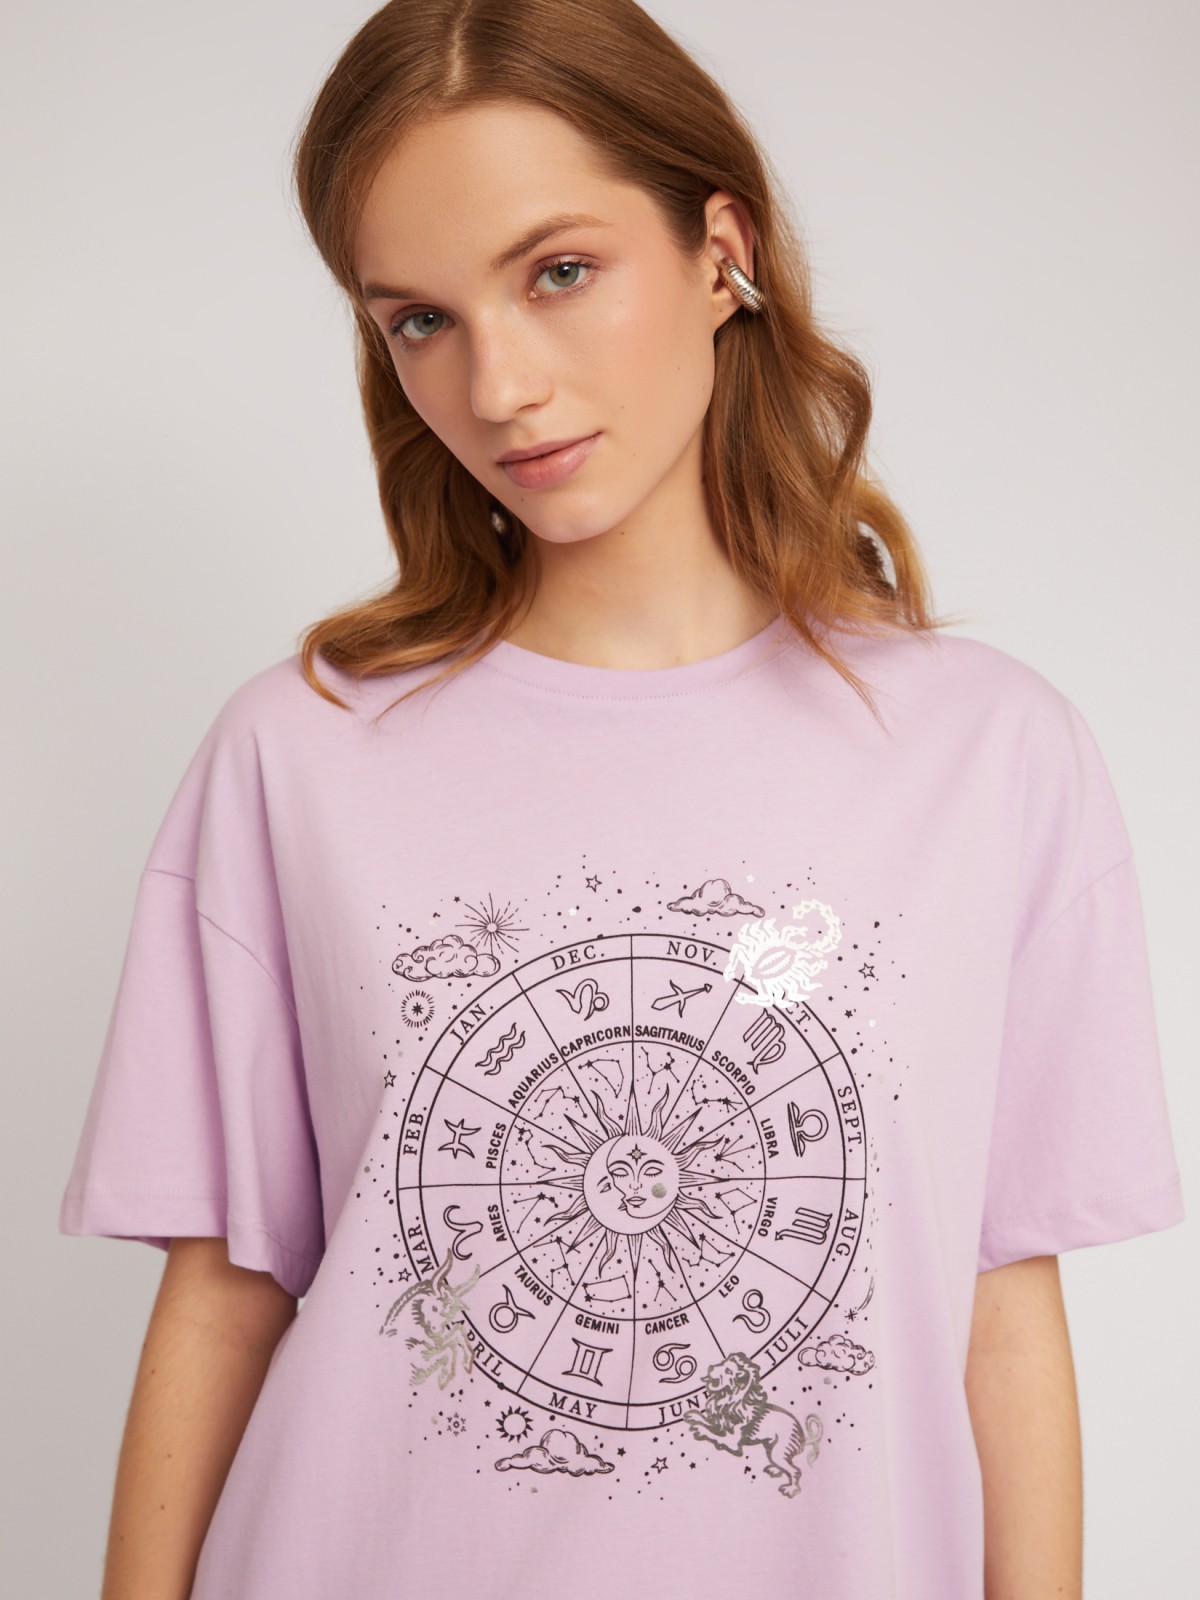 Трикотажная футболка из хлопка с принтом zolla N2424320W183, цвет лиловый, размер XS - фото 5